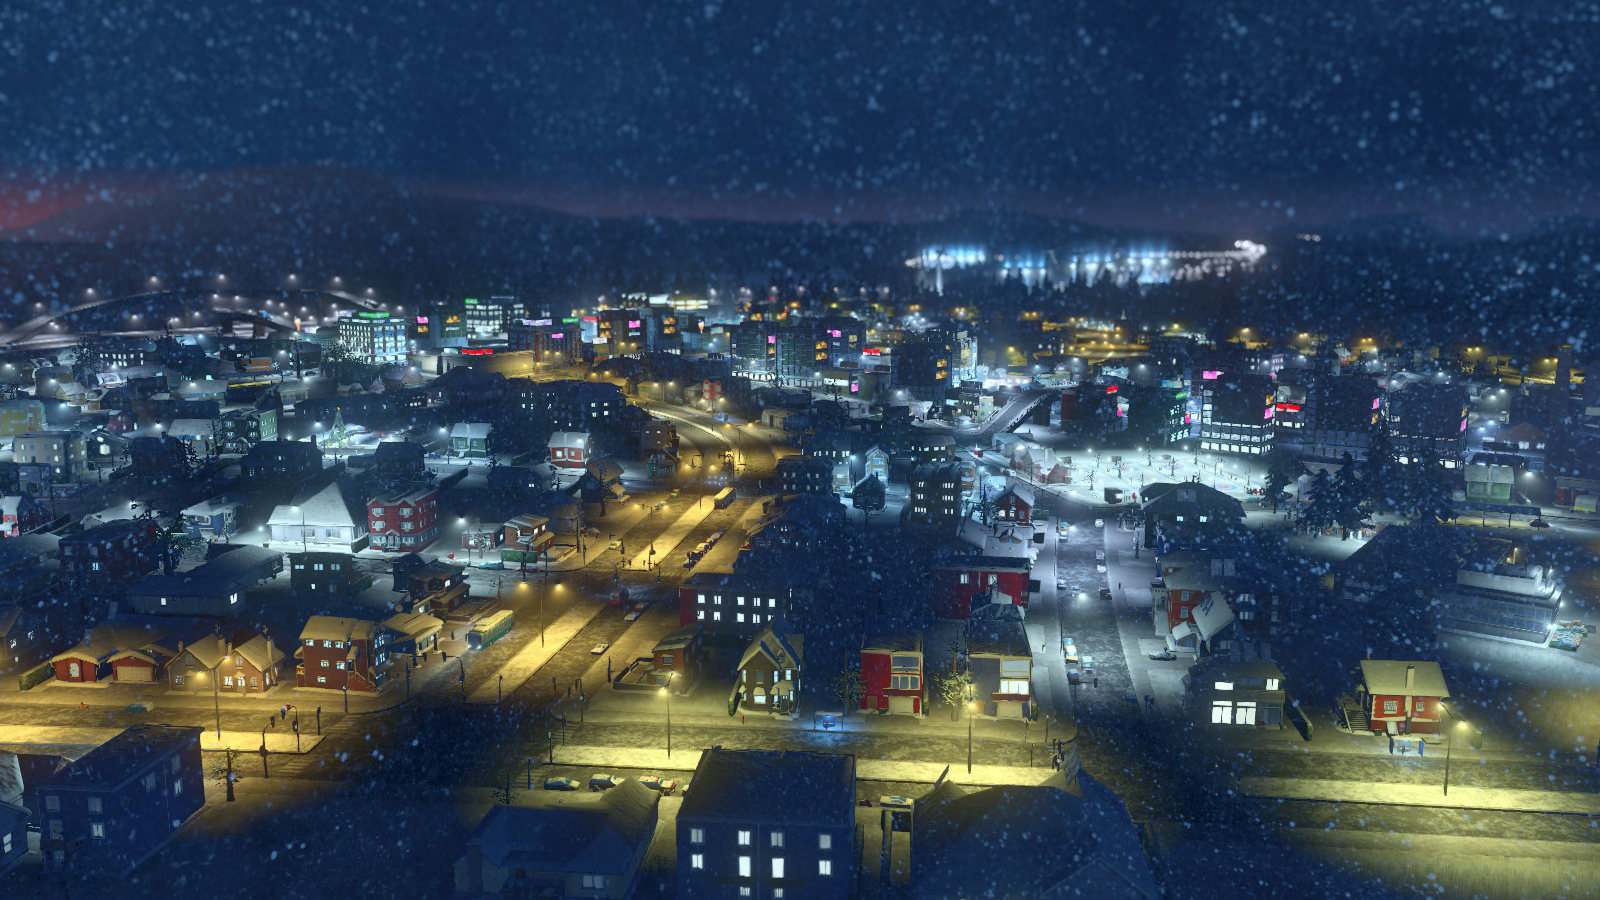 都市:天际线 - 降雪 cities: skylines - snowfall 的图片